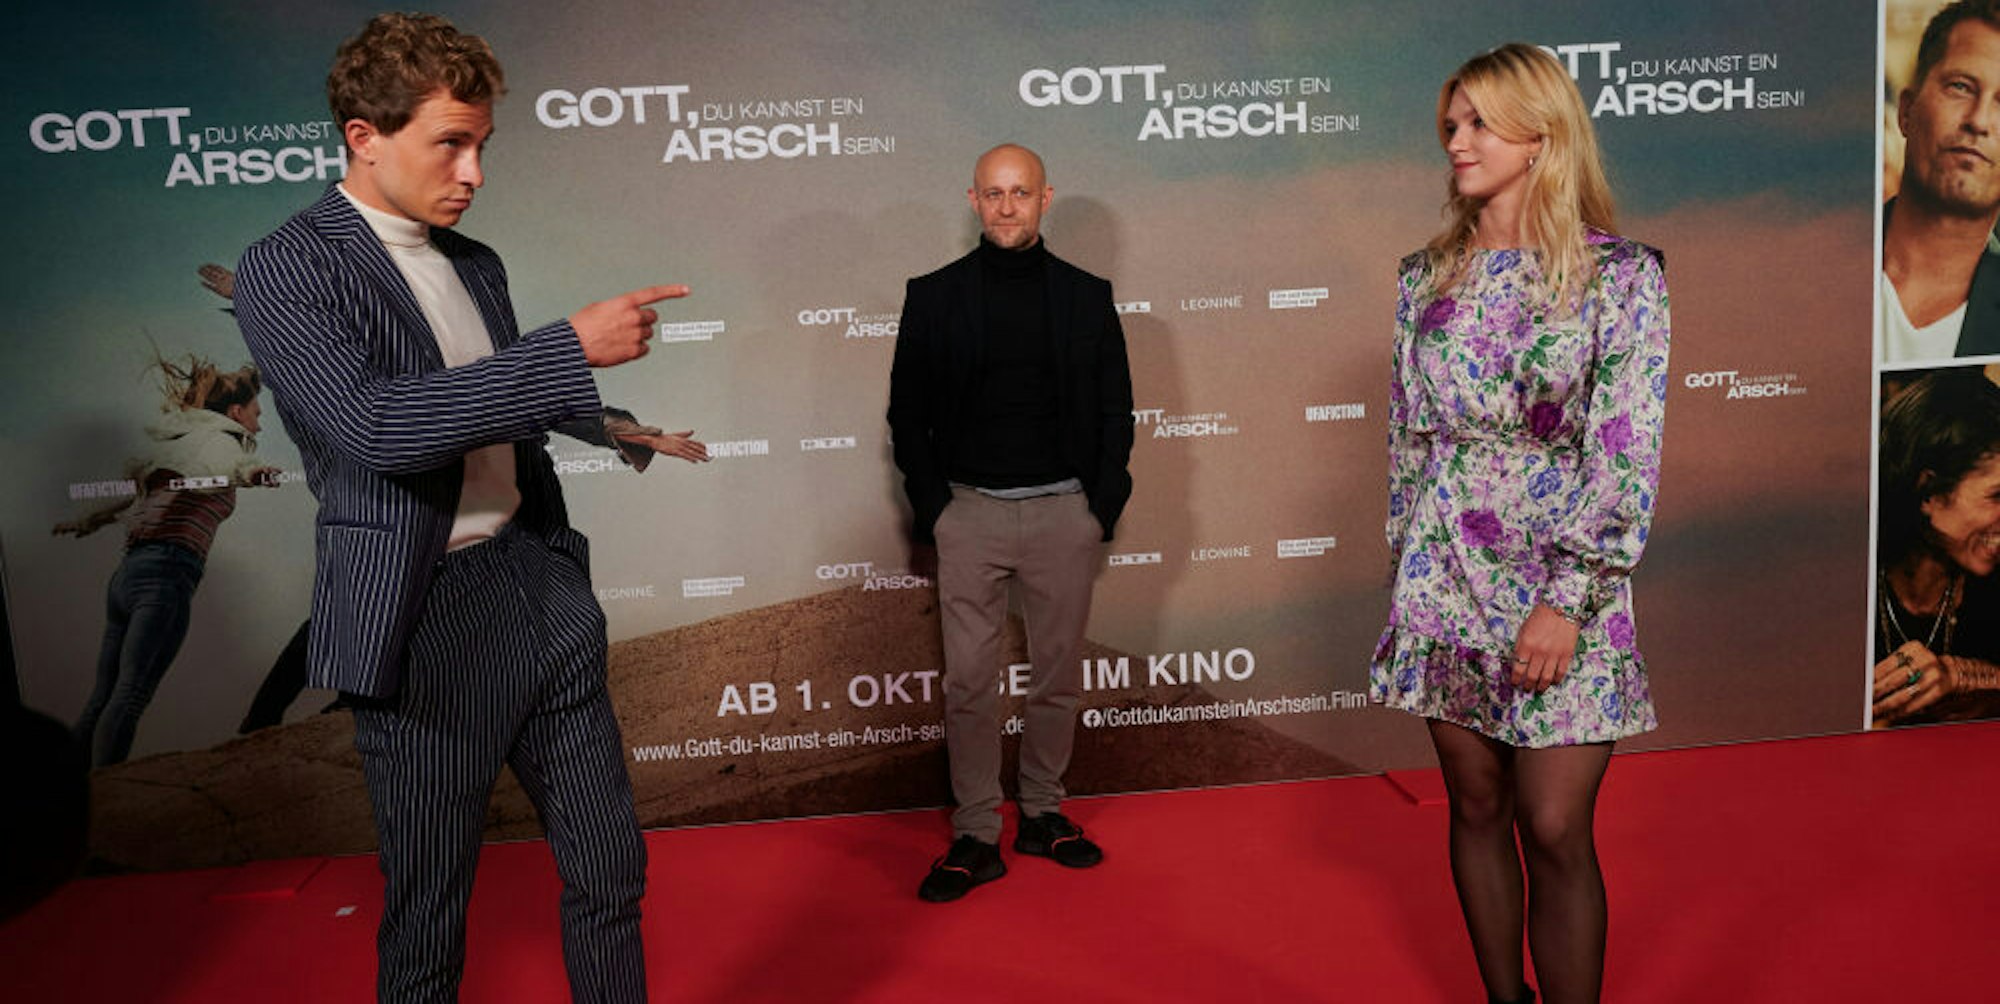 Die Schauspieler Max Hubacher (l.), Jürgen Vogel und Sinje Irslinger stehen bei der Premiere des Kinofilms „Gott, du kannst ein Arsch sein!“ auf dem roten Teppich vor dem Cinedom.